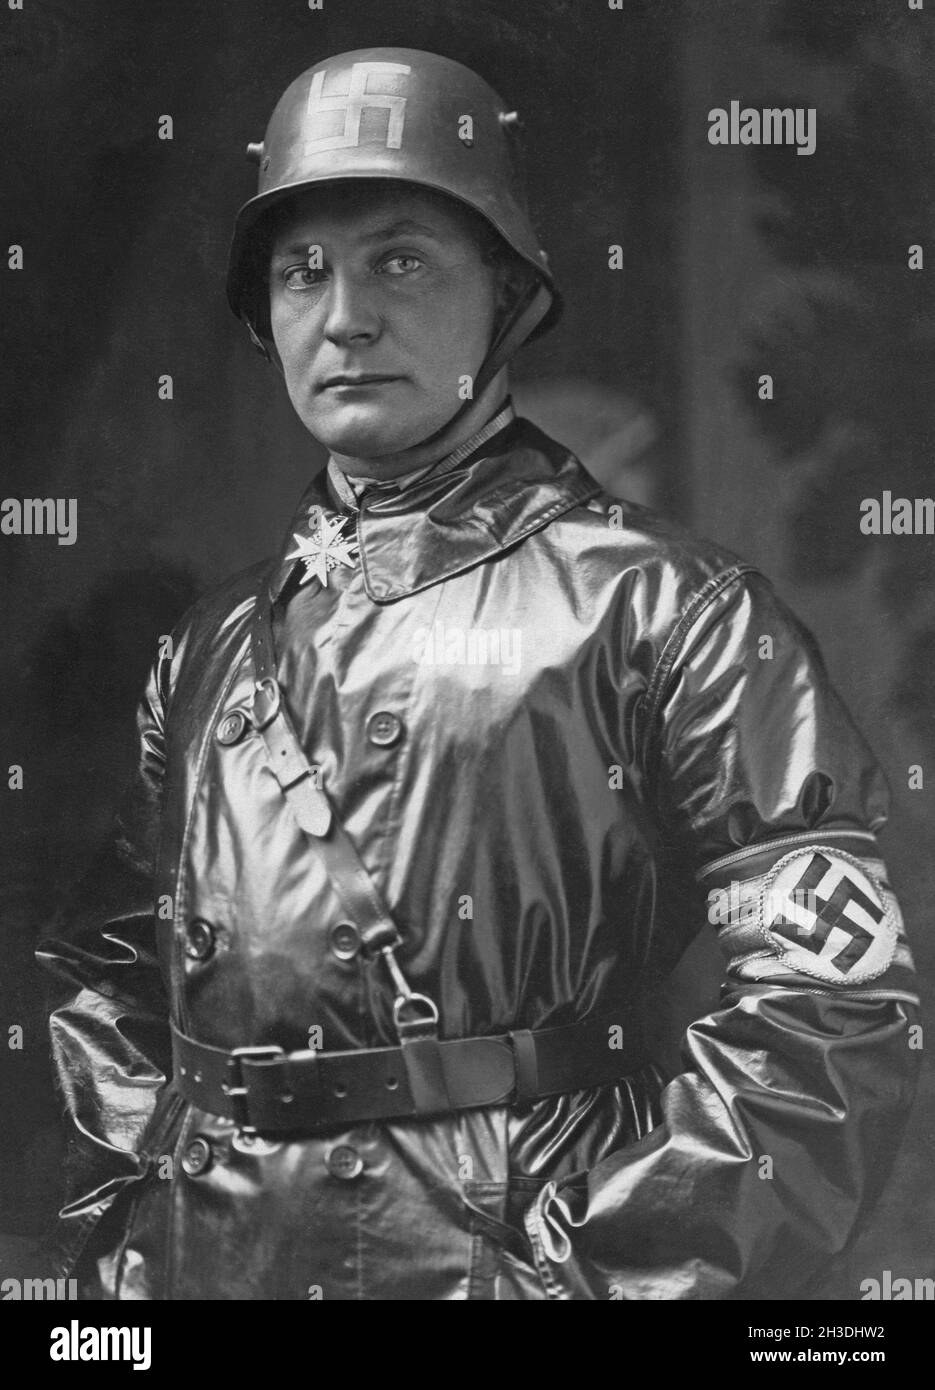 Hermann Göring.Homme politique allemand, chef militaire et condamné criminel de guerre.Né le 12 1893 janvier, mort le 15 octobre 1946.Photo dans l'uniforme de la Sturmabteilung.L'aile paramilitaire originale du Parti nazi.Il a joué un rôle important dans l'ascension au pouvoir d'Adolf Hitlers dans les années 1920 et 1930.Hermann Göring a reçu le commandement de la sa en tant qu'Oberster sa-Führer en 1923.Il a ensuite été nommé sa-Gruppenführer (lieutenant-général) et a occupé ce poste jusqu'en 1945.La croix gammée nazie est vue sur son bras et sur son casque. Banque D'Images